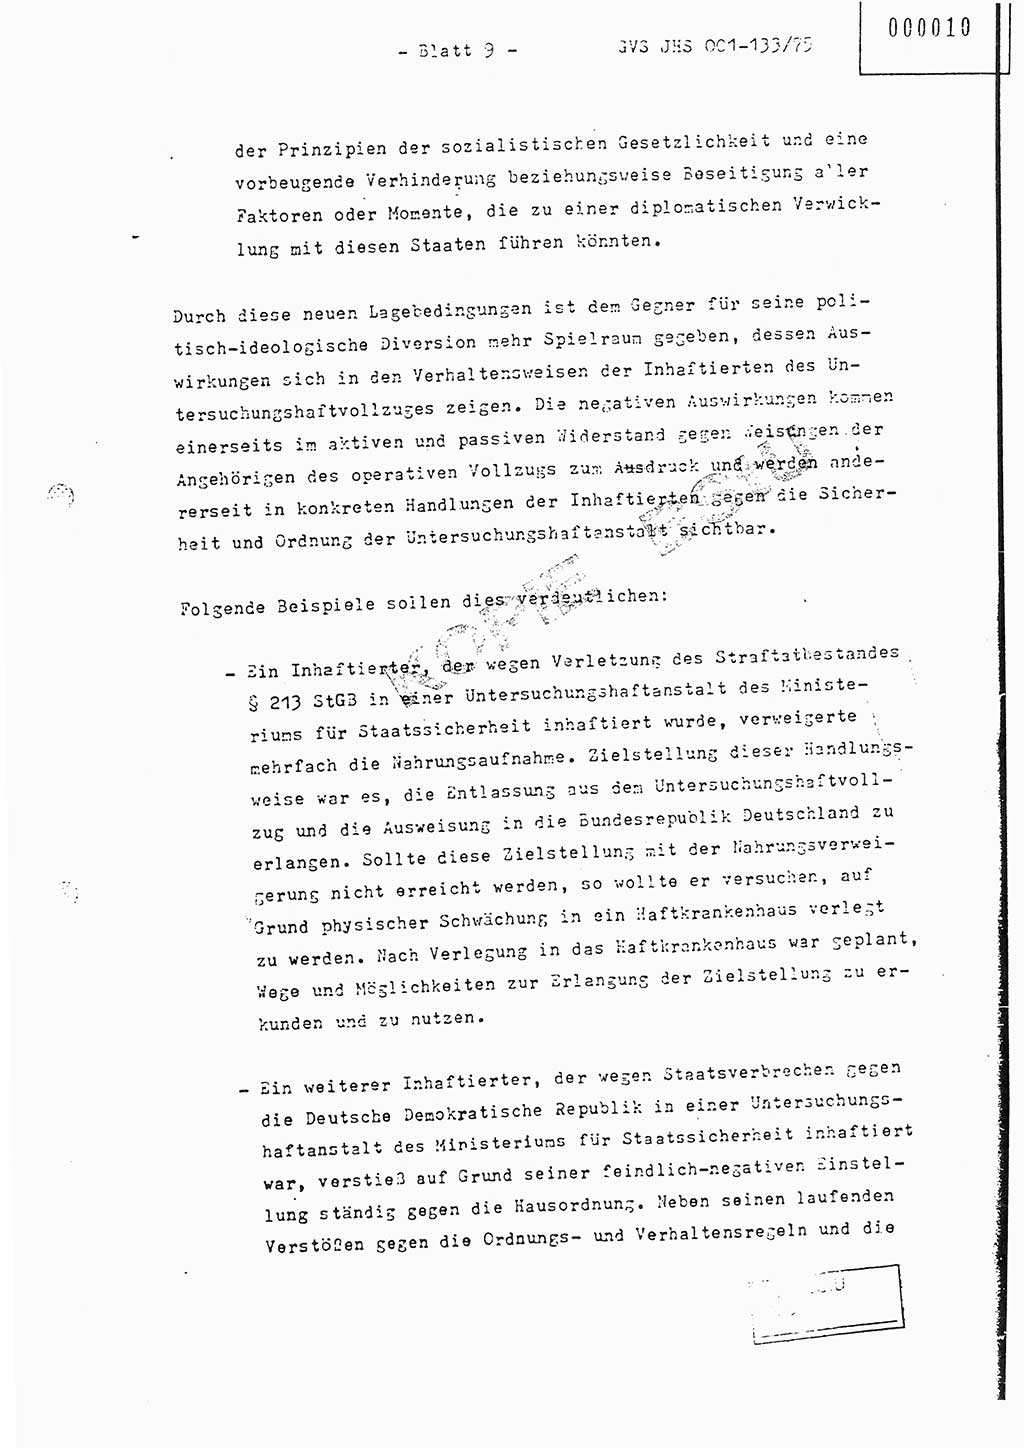 Fachschulabschlußarbeit Major Werner Braun (Abt. ⅩⅣ), Hauptmann Klaus Zeiß (Abt. ⅩⅣ), Ministerium für Staatssicherheit (MfS) [Deutsche Demokratische Republik (DDR)], Juristische Hochschule (JHS), Geheime Verschlußsache (GVS) 001-133/75, Potsdam 1976, Blatt 9 (FS-Abschl.-Arb. MfS DDR JHS GVS 001-133/75 1976, Bl. 9)